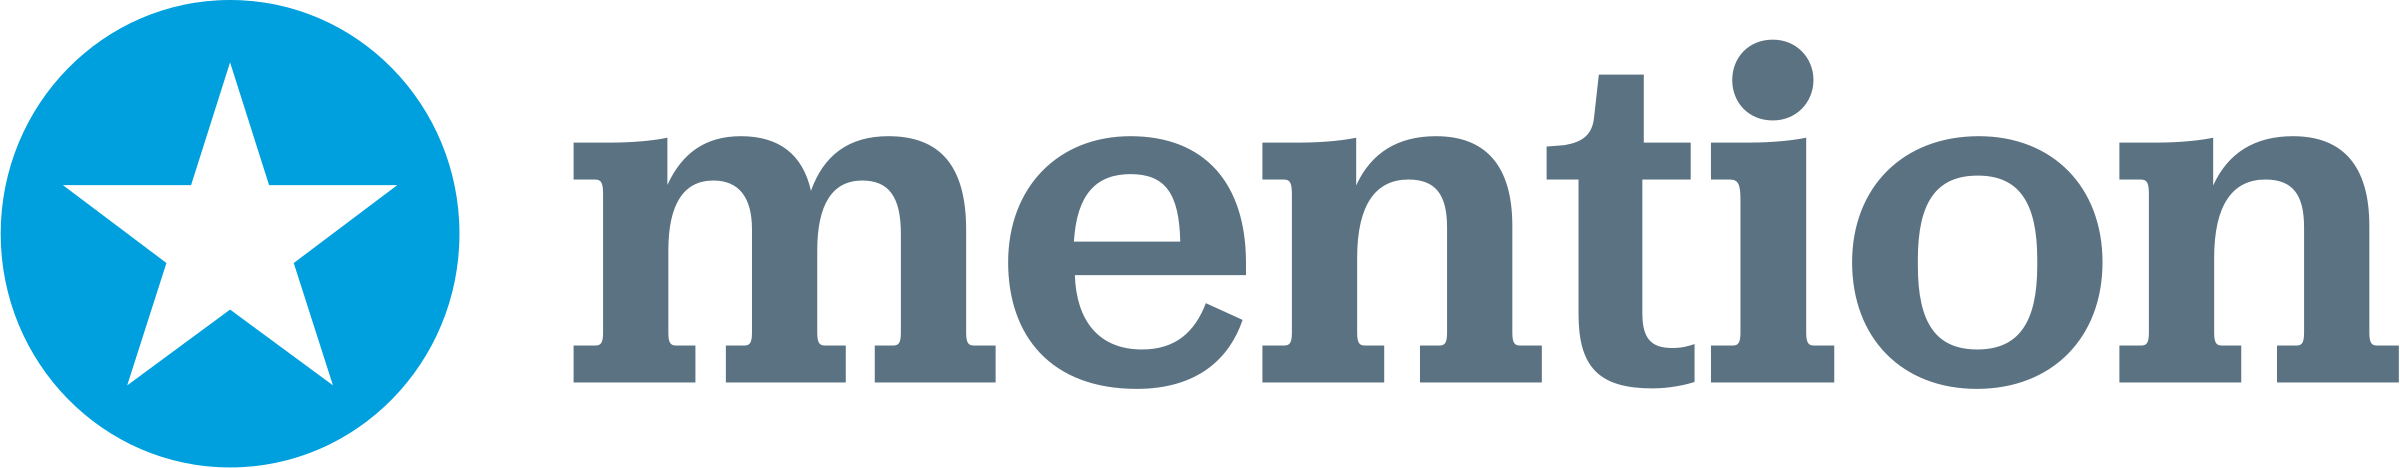 Mention Logo - Mention Logo PNG Transparent & SVG Vector